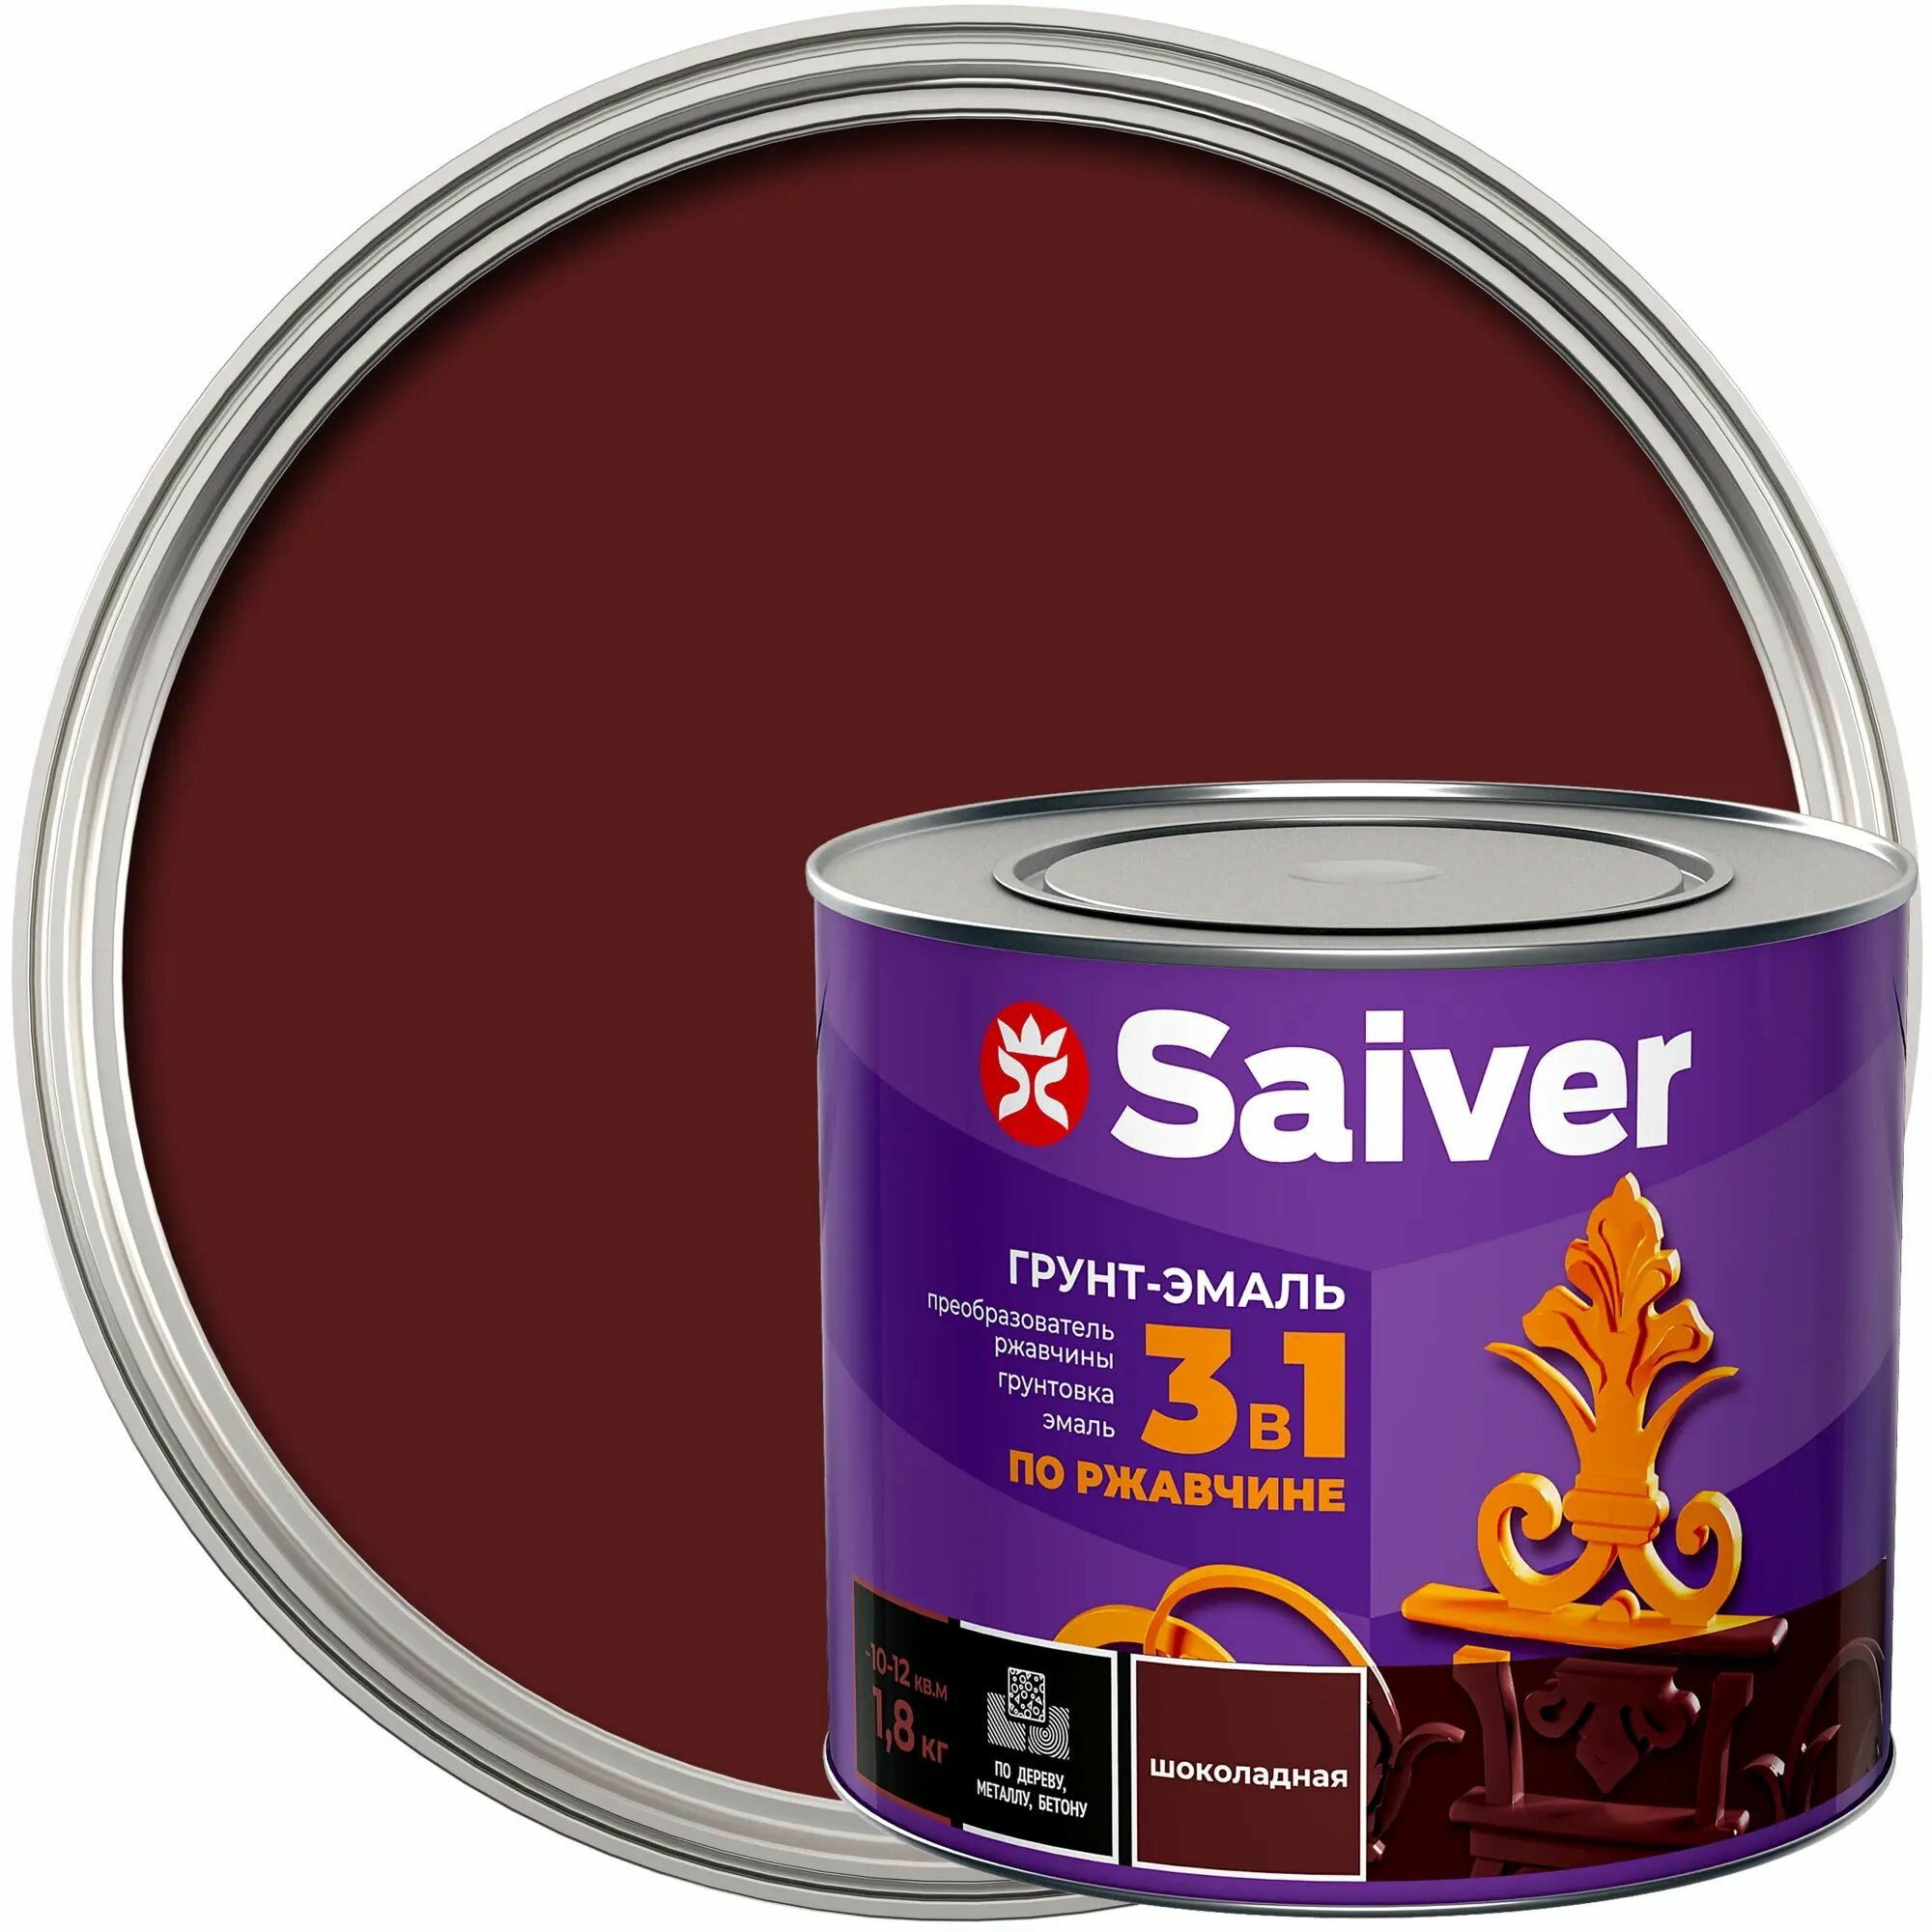 Антикоррозионная эмаль Saiver цвет шоколадный 1.8 кг